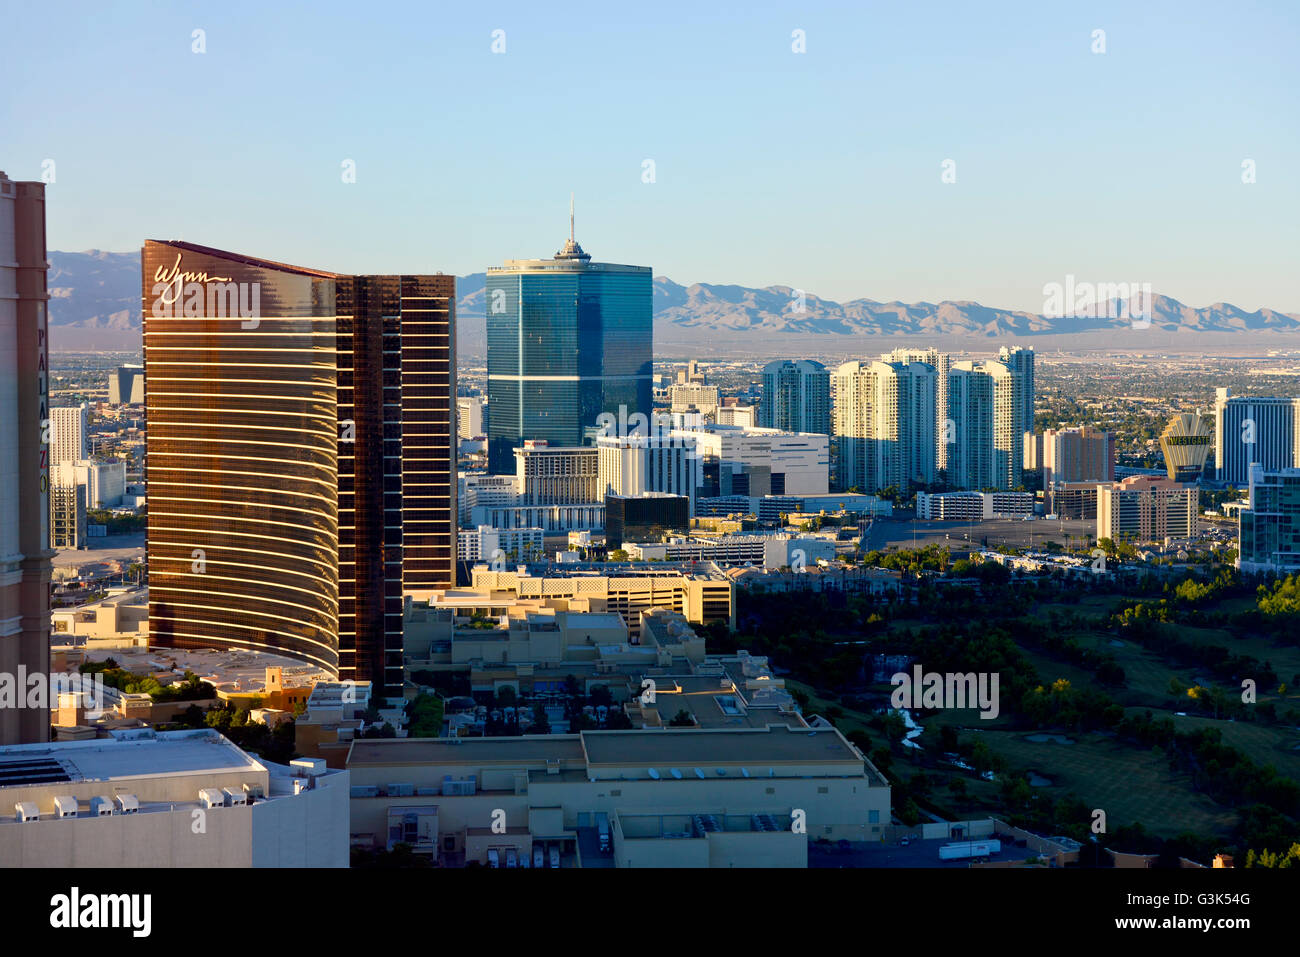 Une vue aérienne de la Bande de Las Vegas comme vu à partir de la 'High Roller' a 550 ft Farris attraction touristique de roue Banque D'Images